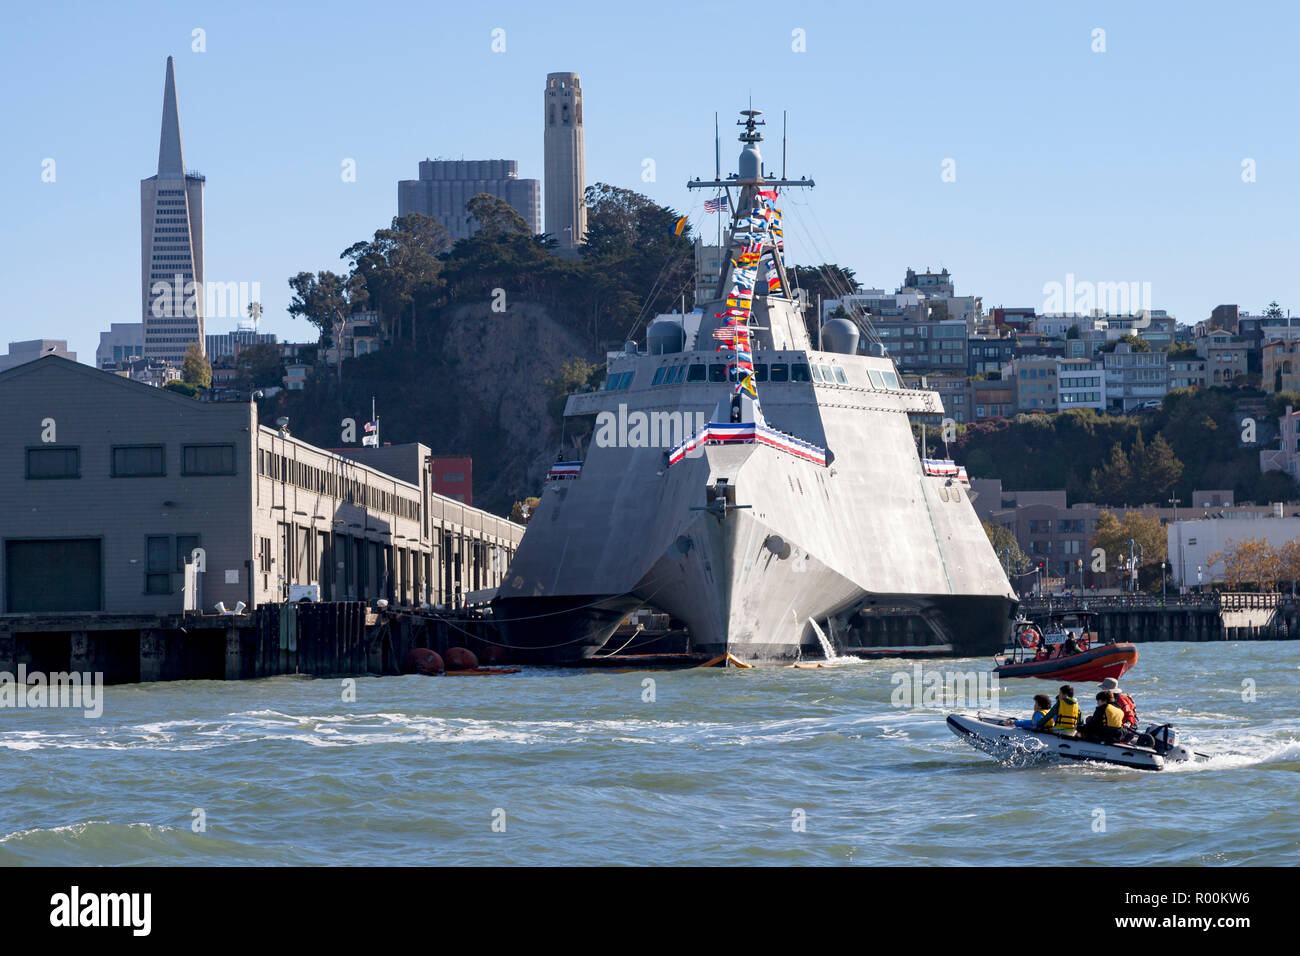 L'indépendance de combat littoral classe USS Manchester (LCS) 14 amarré le long du front de mer de San Francisco. Banque D'Images